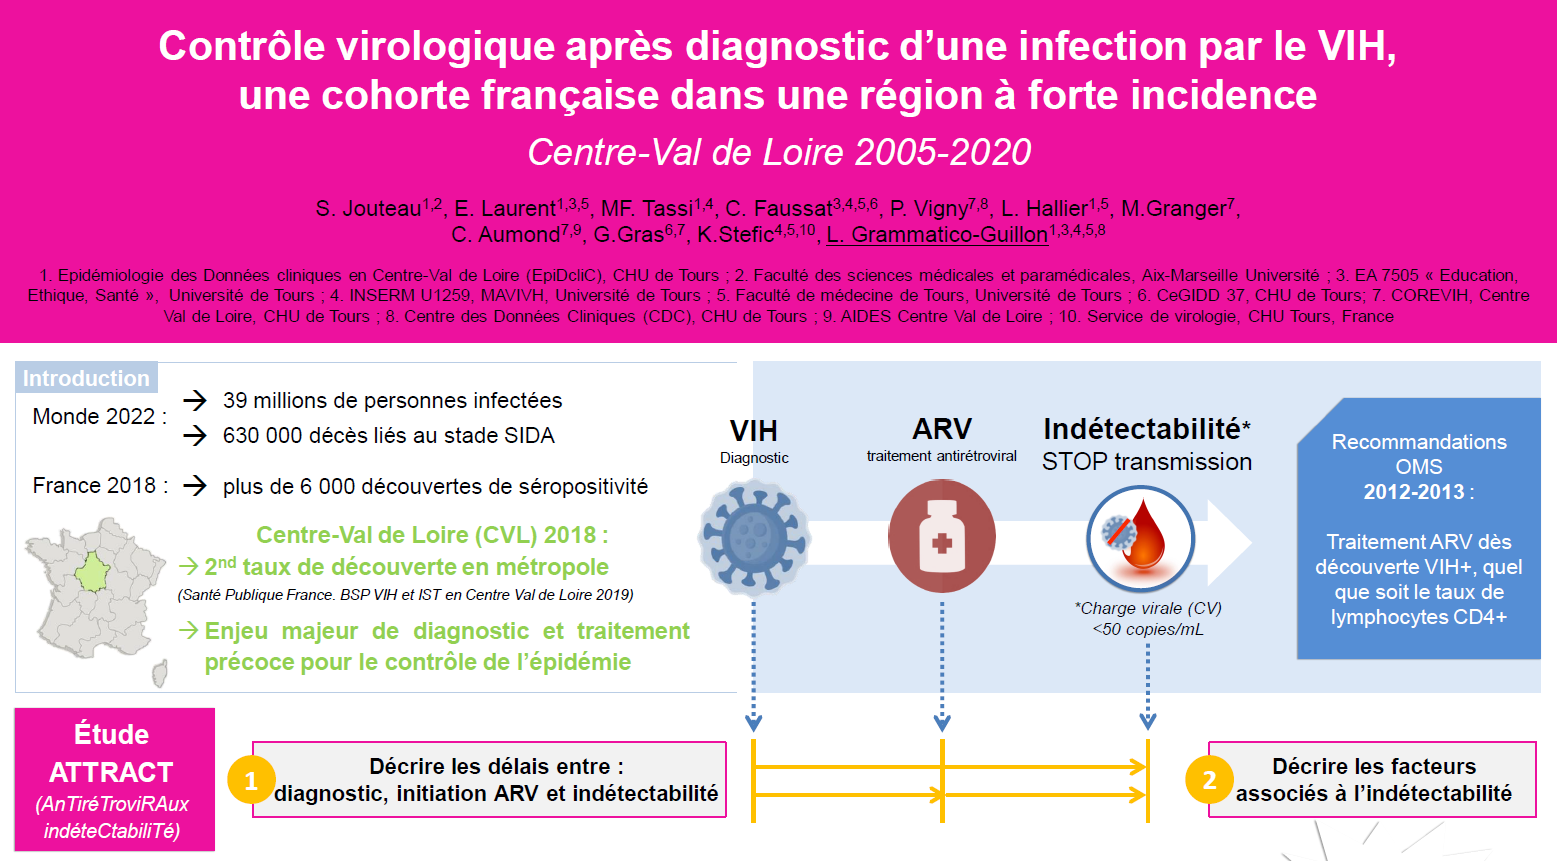 ATTRACT : Contrôle virologique après diagnostic d’une infection par le VIH, cohorte française dans une région à forte incidence